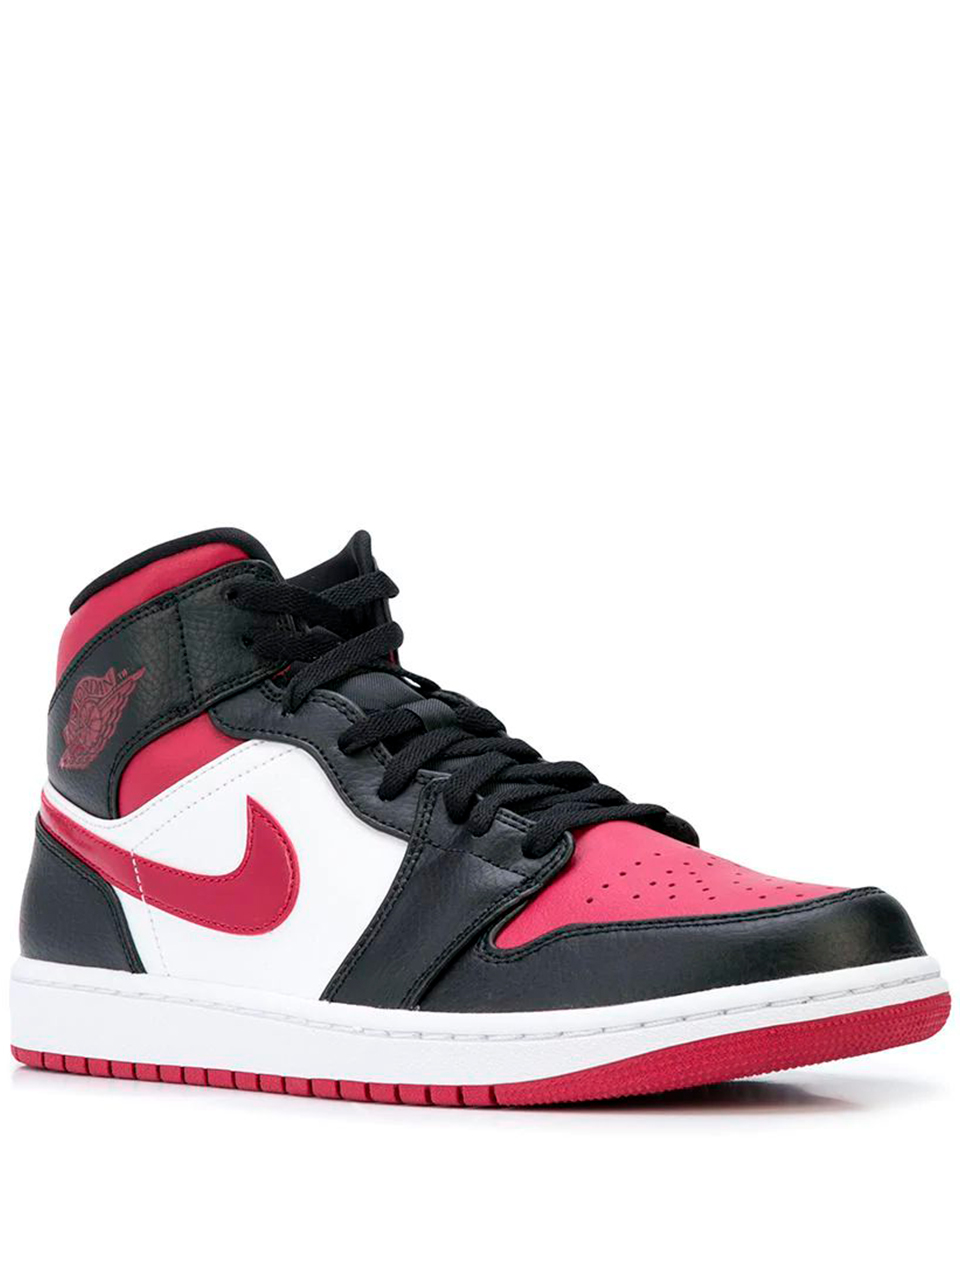 Imagem de: Tênis Nike Air Jordan 1 Mid Branco e Vermelho